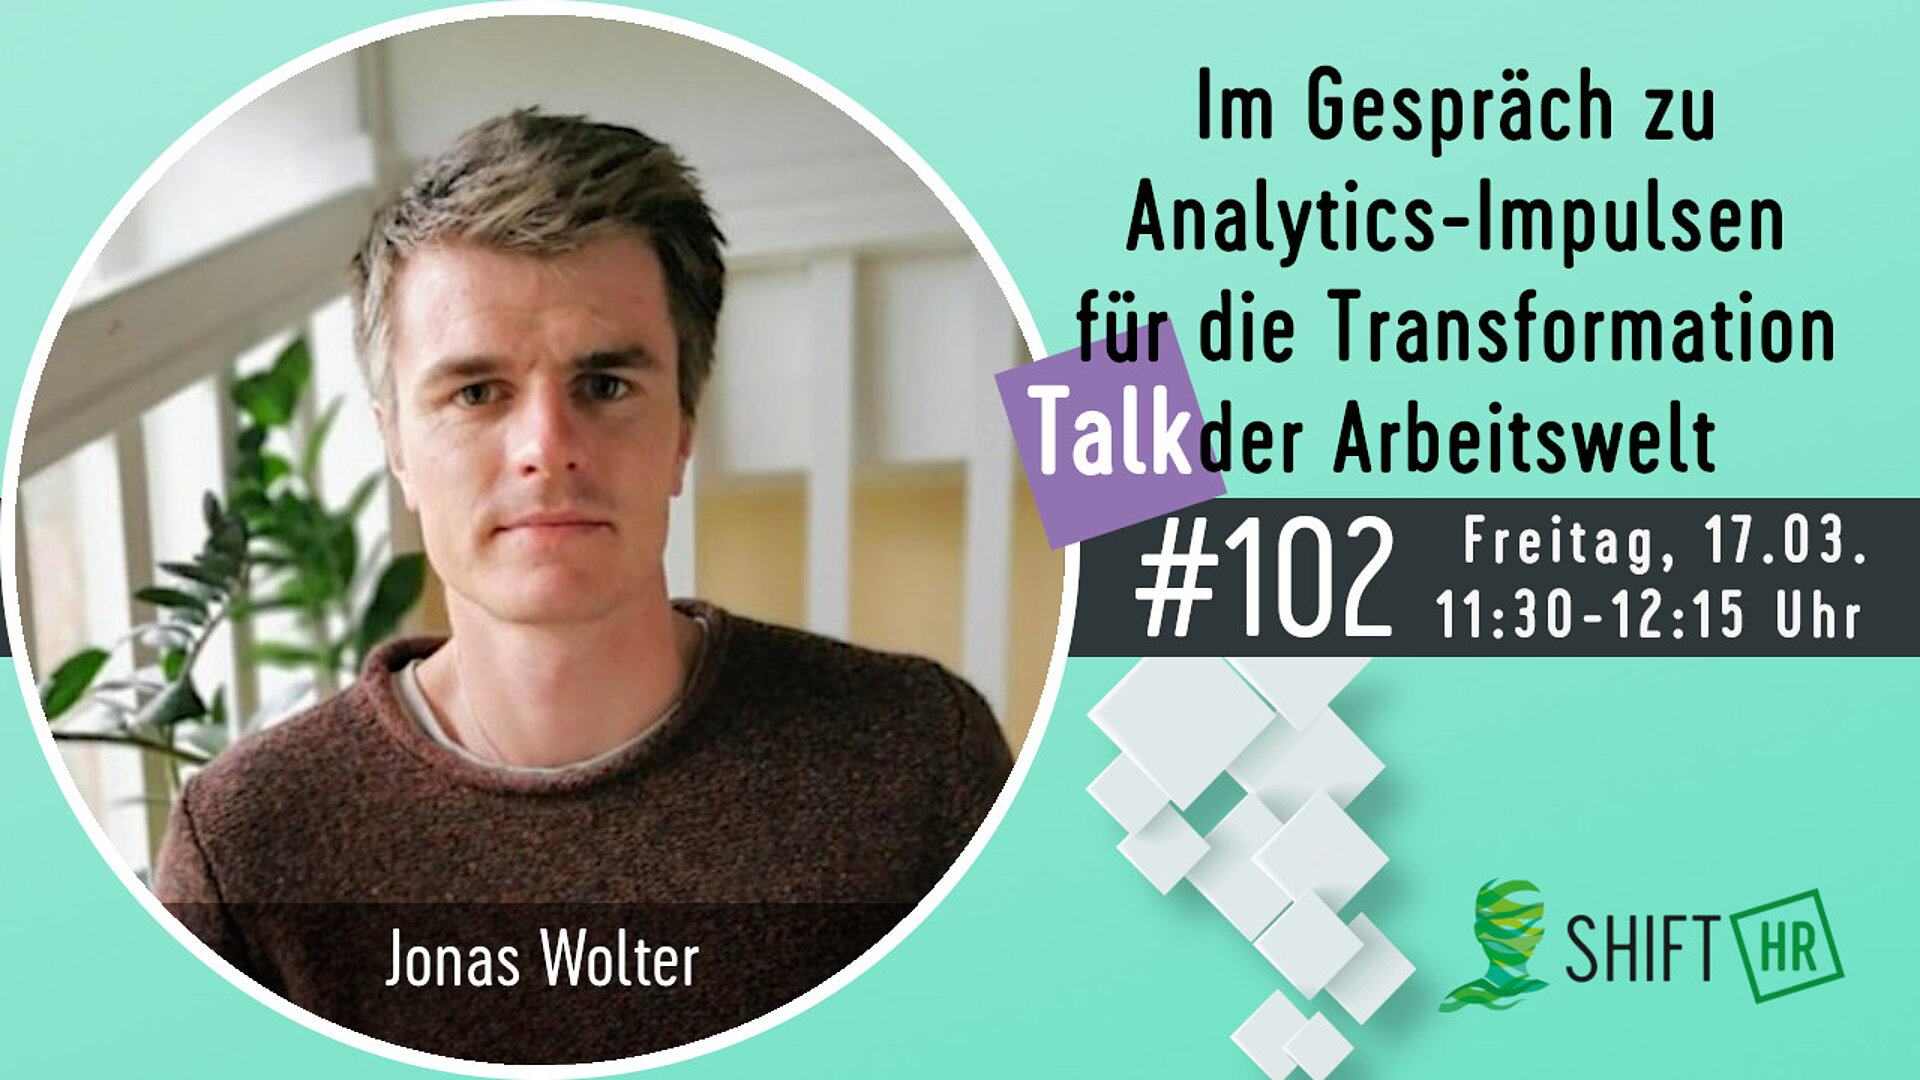 Im Gespräch mit Jonas Wolter zu Analytics-Impulsen für die Transformation der Arbeitswelt